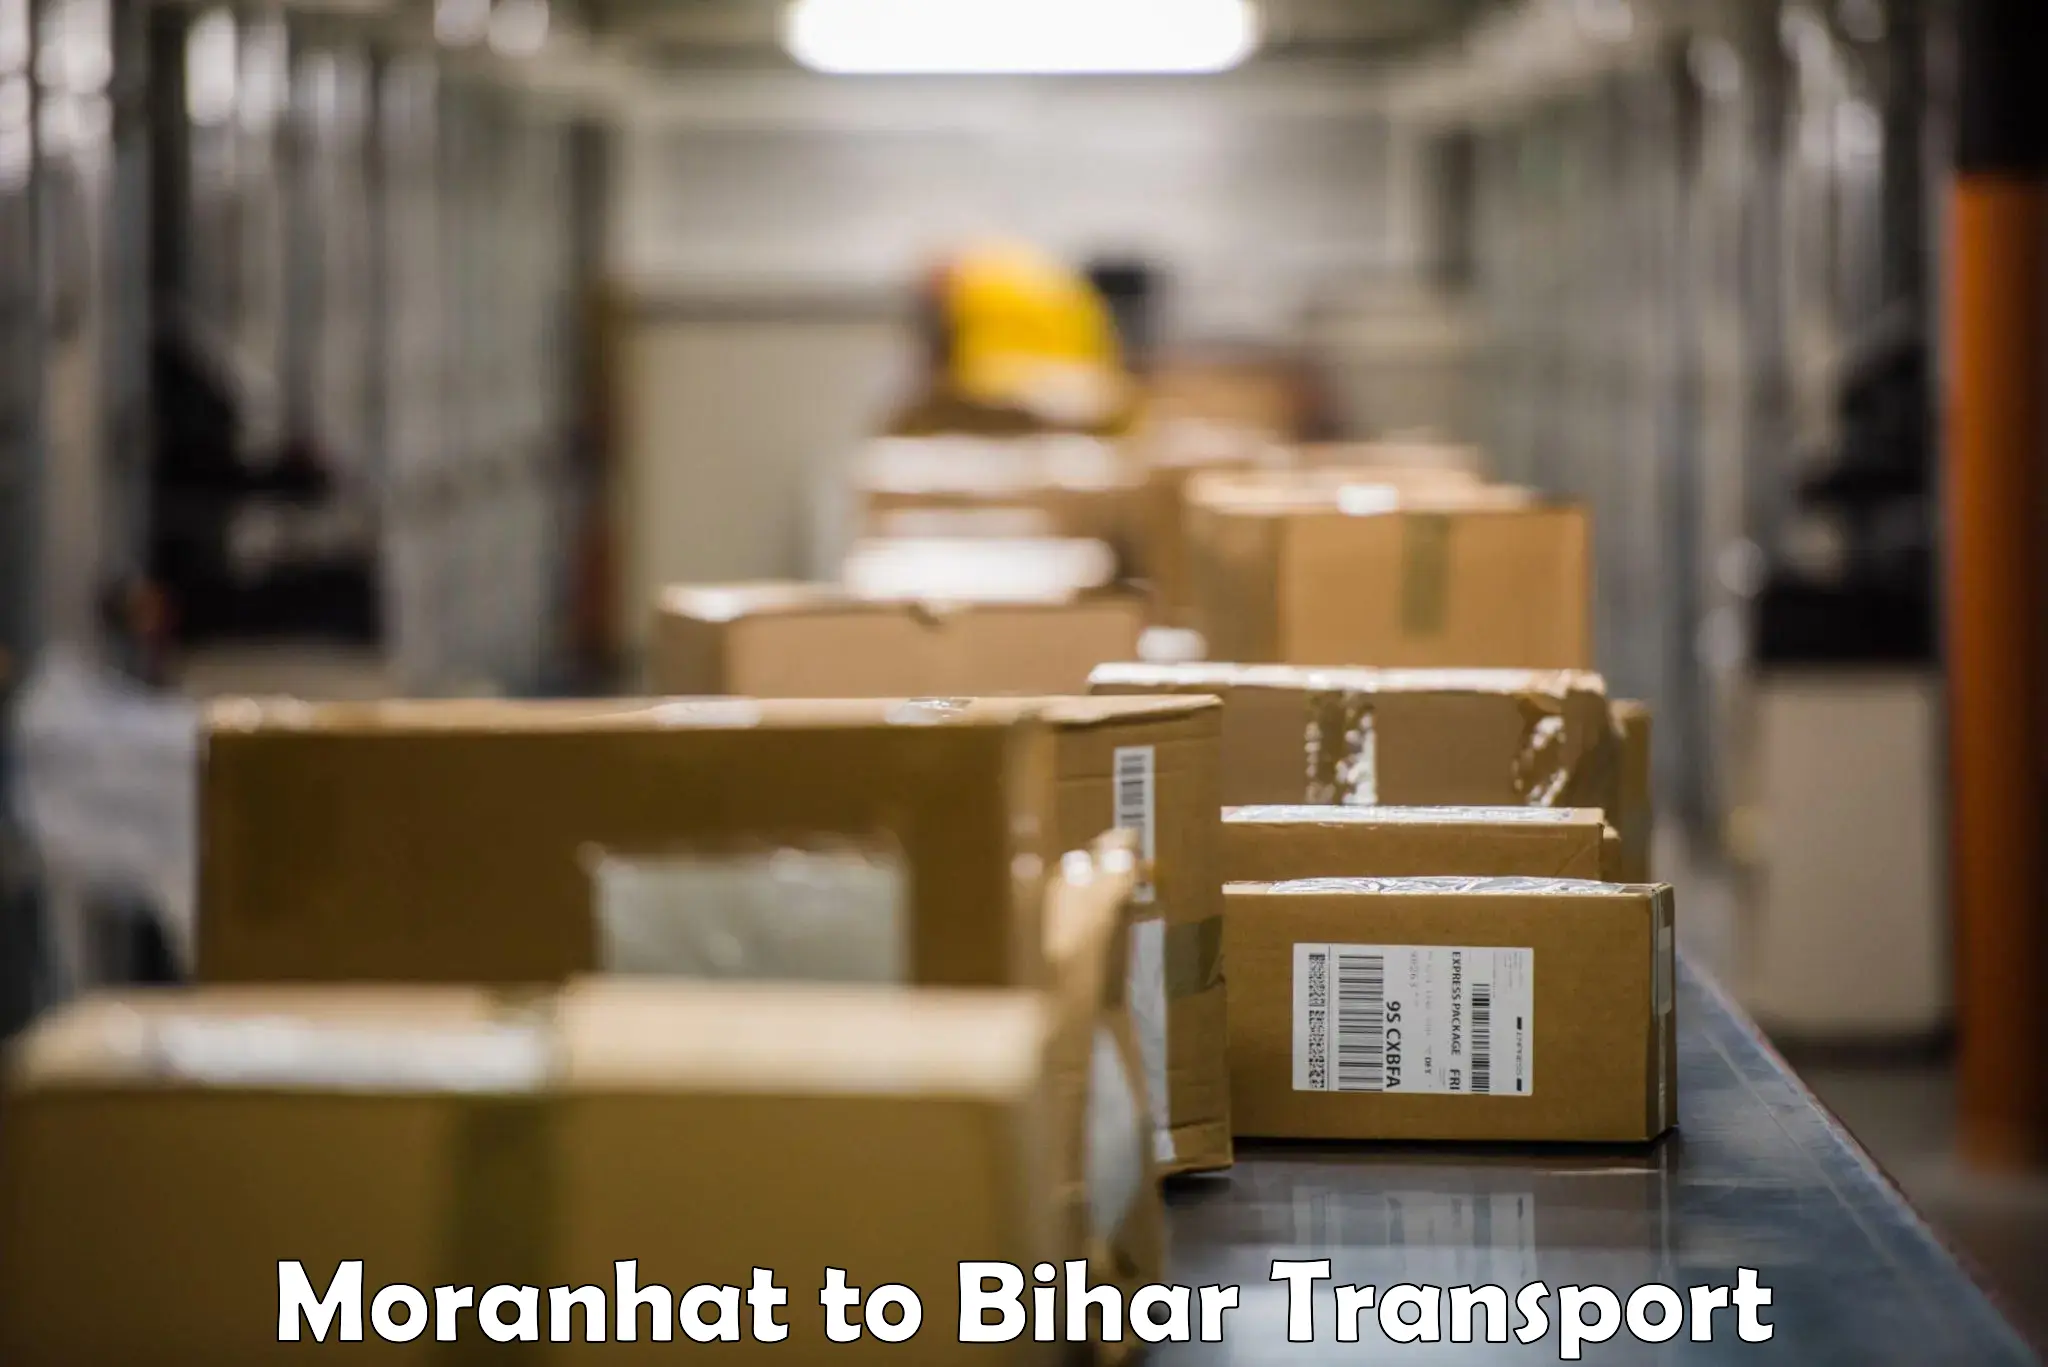 Logistics transportation services Moranhat to Sheikhpura